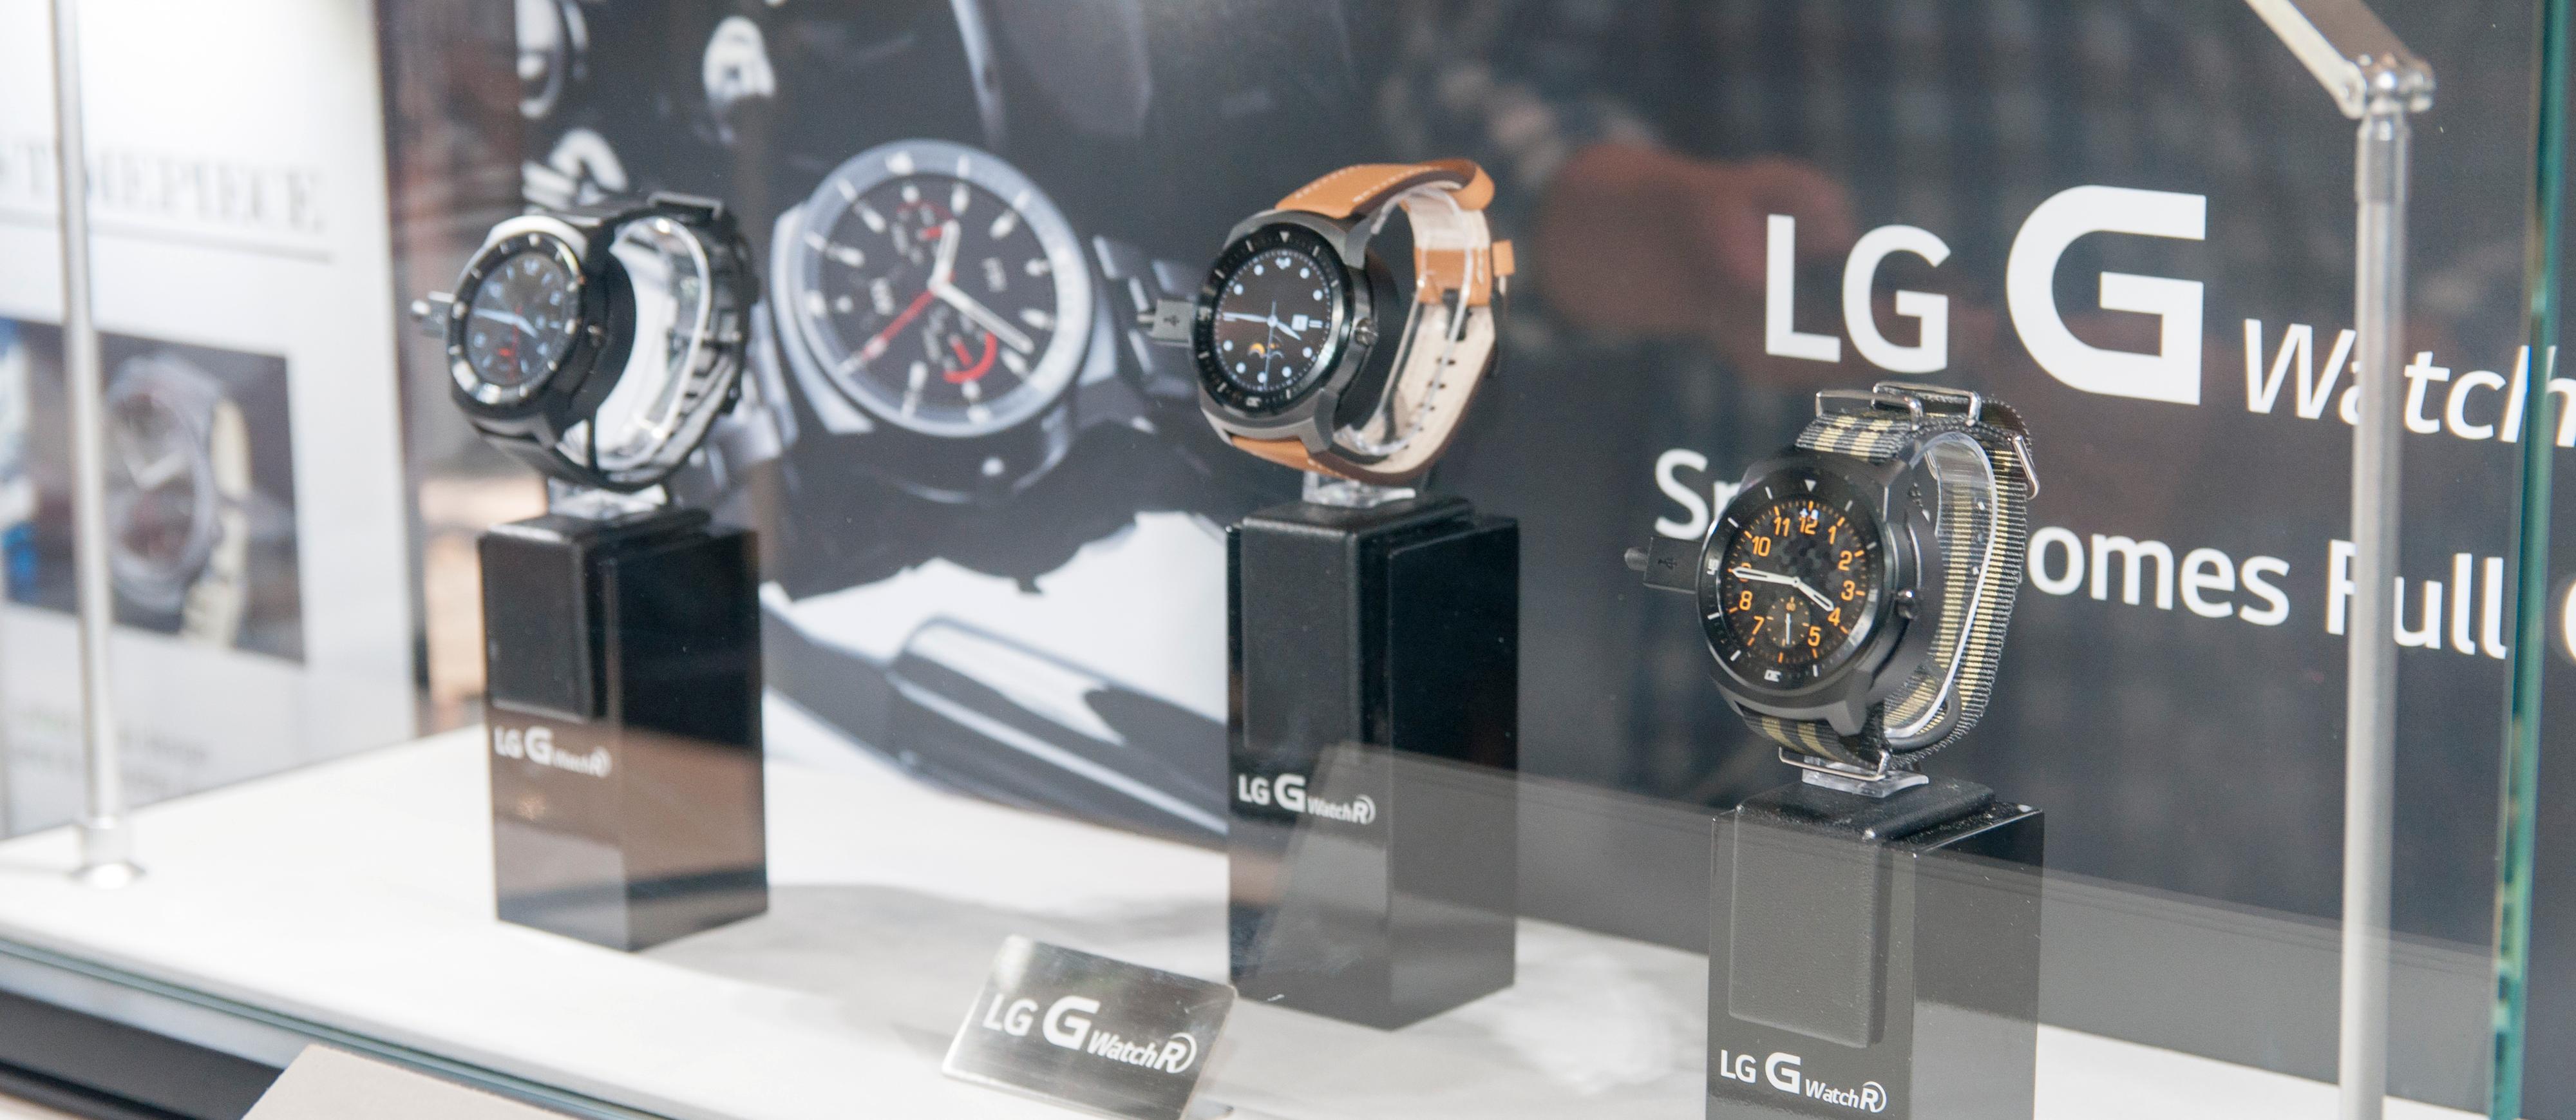 LG viste frem klokken med en rekke forskjellige reimer.Foto: Finn Jarle Kvalheim, Amobil.no